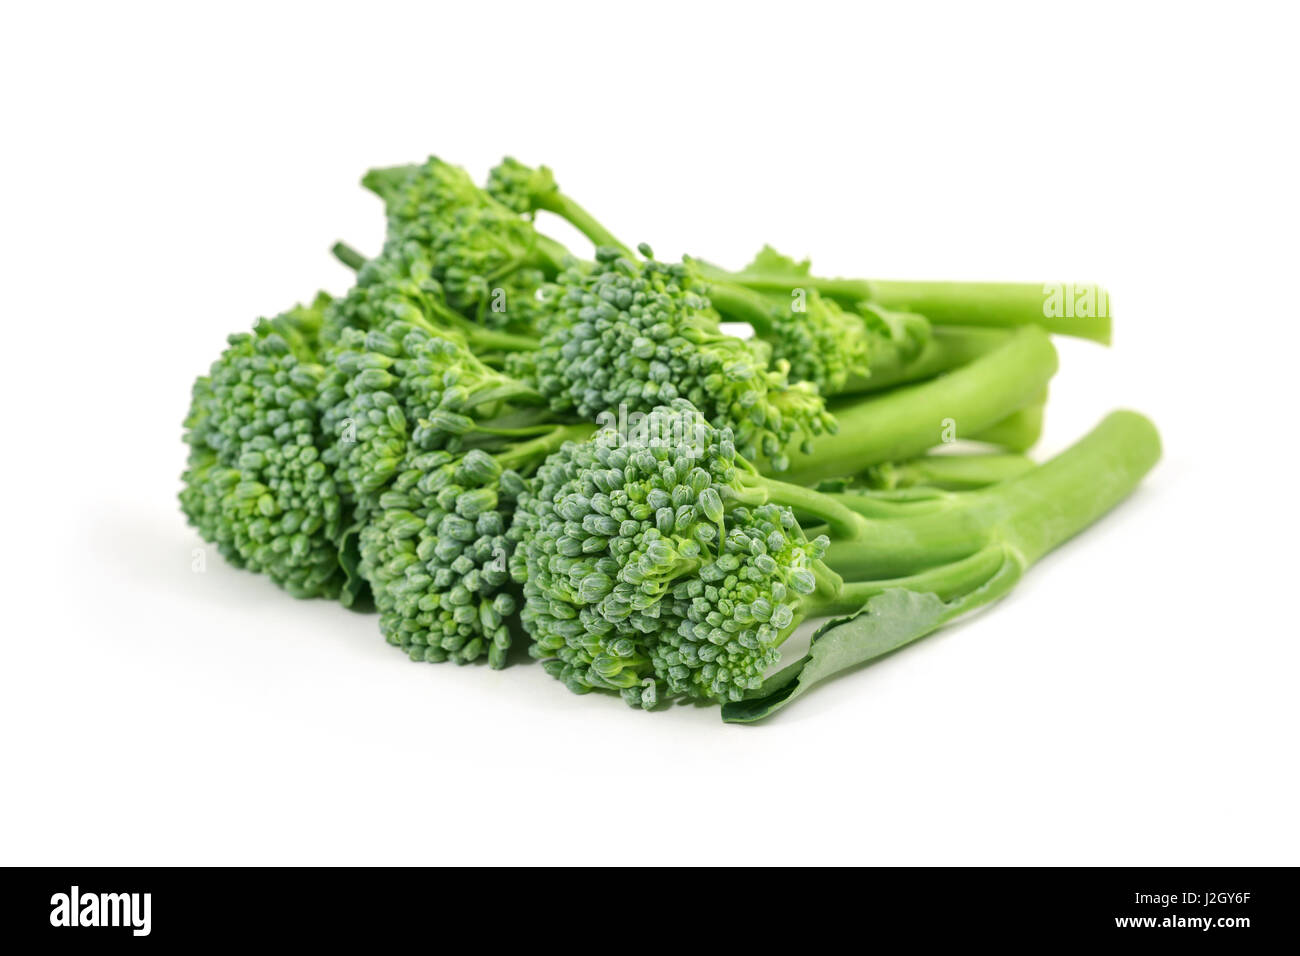 Acercamiento de algunos tallos de broccolini sobre un fondo blanco. Foto de stock